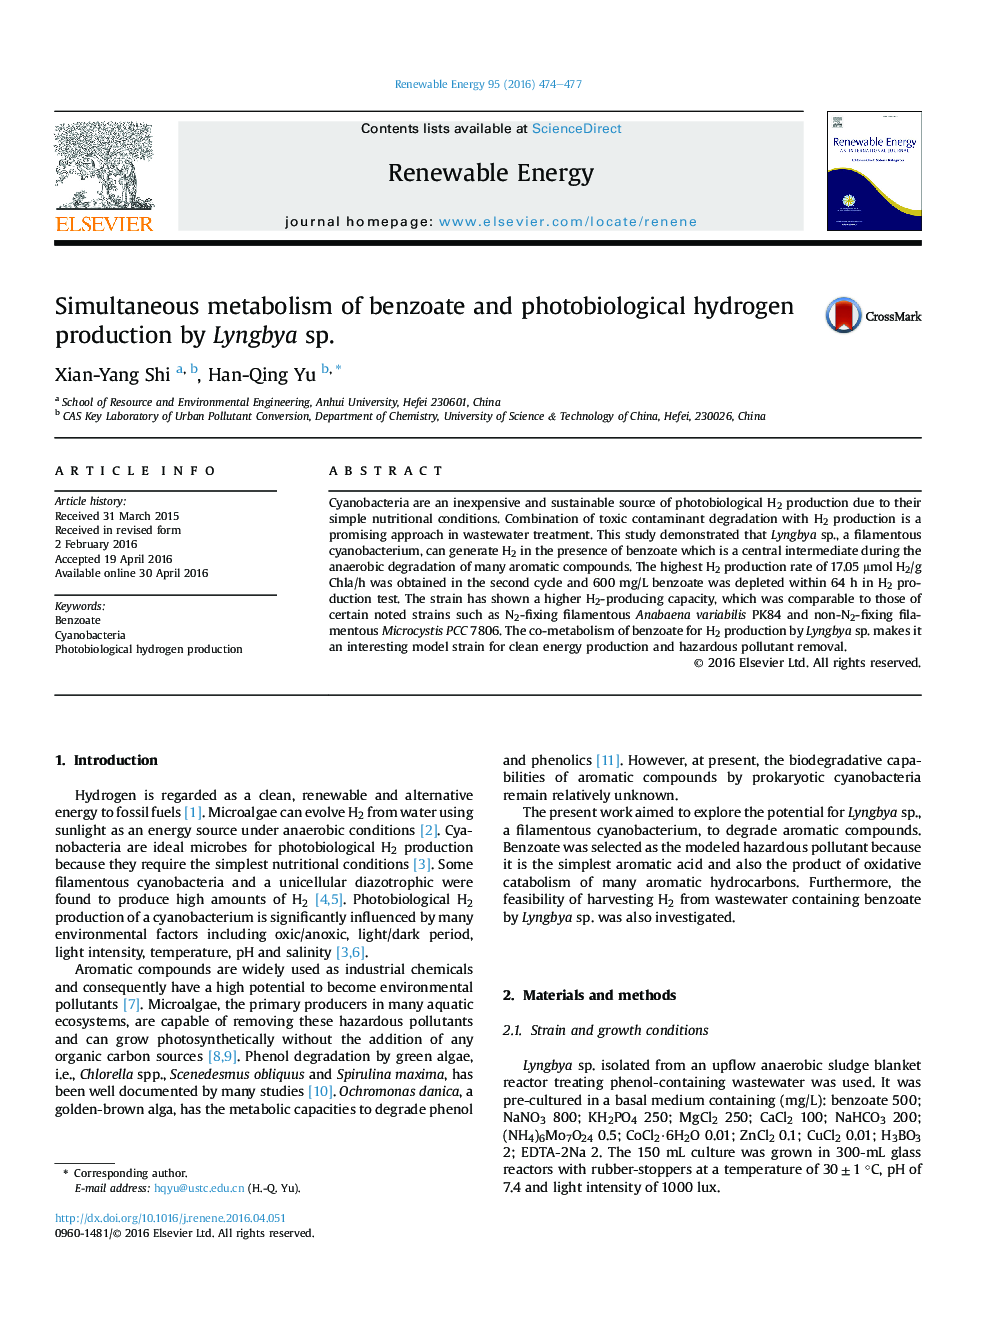 متابولیسم همزمان بنزوات و تولید هیدروژن فوتوبیولوژیکی توسط Lyngbya SP.